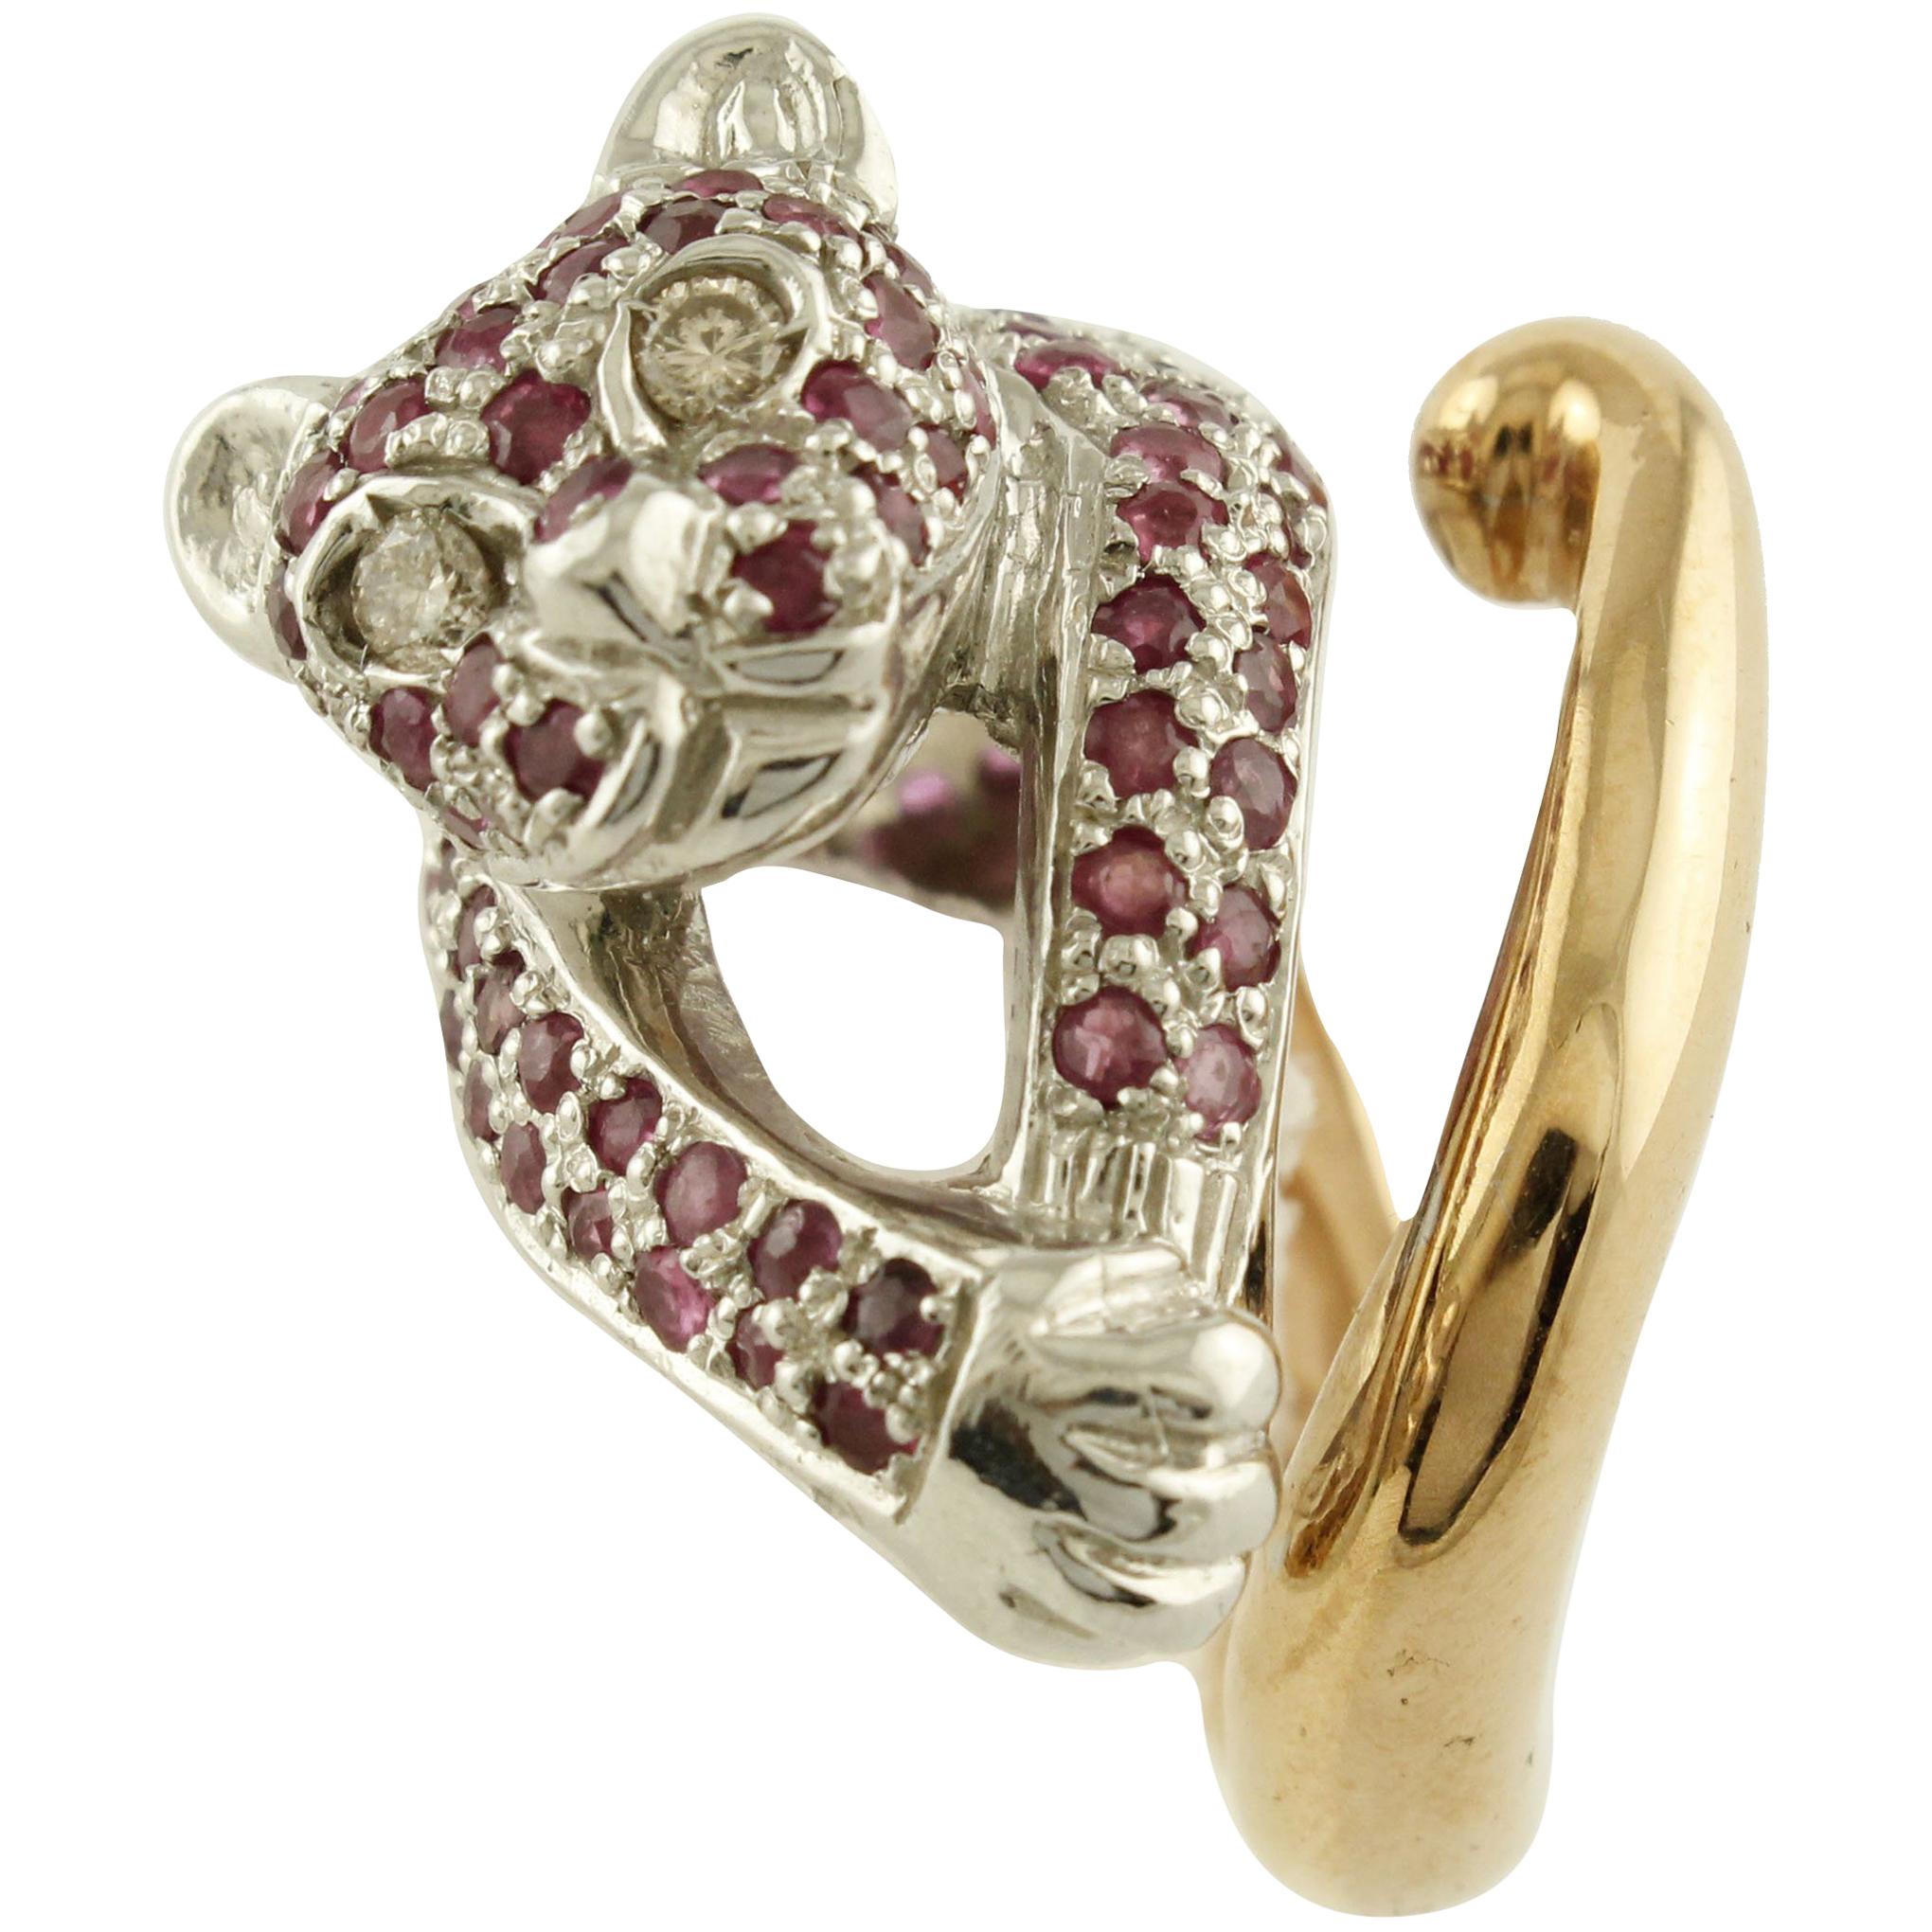 Bague guépard en or rose et argent avec diamants blancs et rubis